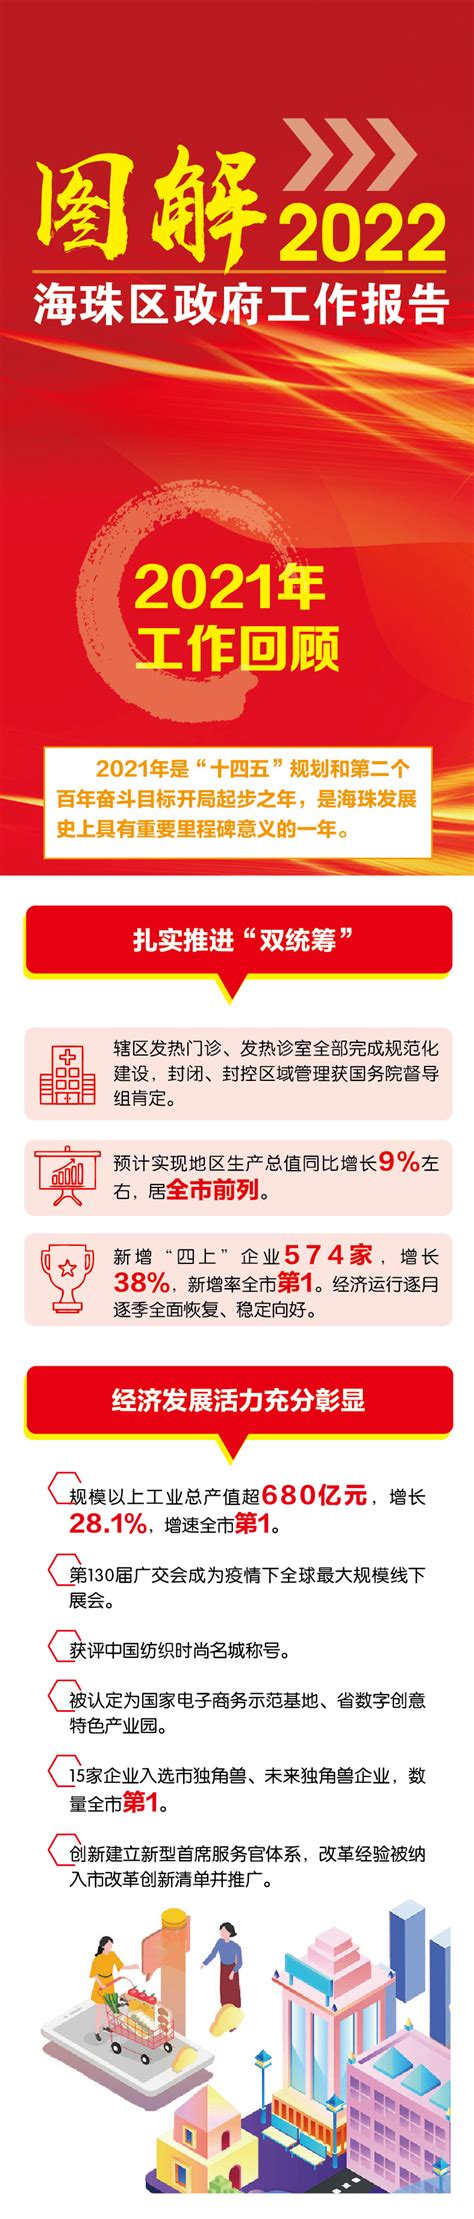 10月30日更新 | 广州海珠各临时管控区服务电话